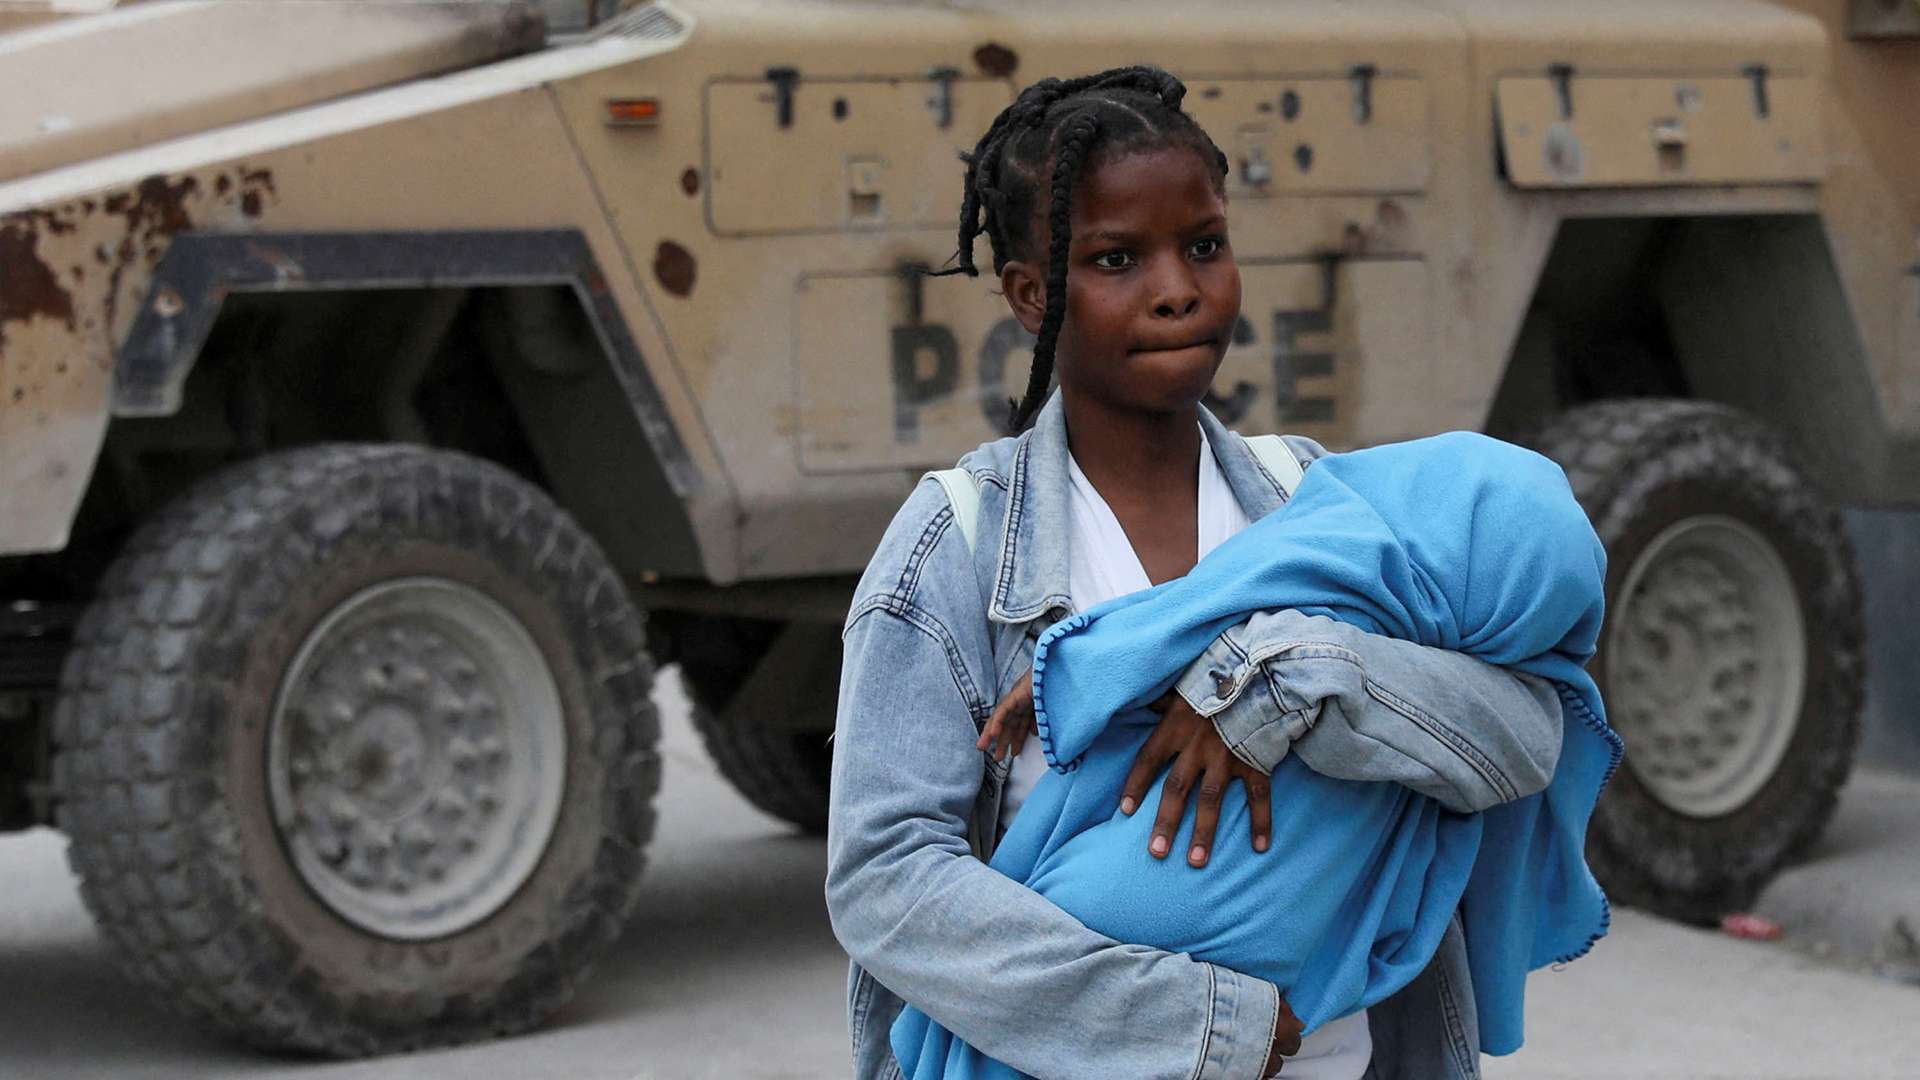 Eine junge Frau in Port-au-Prince, Haiti, verlässt mit ihrem Baby im Arm ihr Zuhause auf der Flucht vor Bandengewalt.